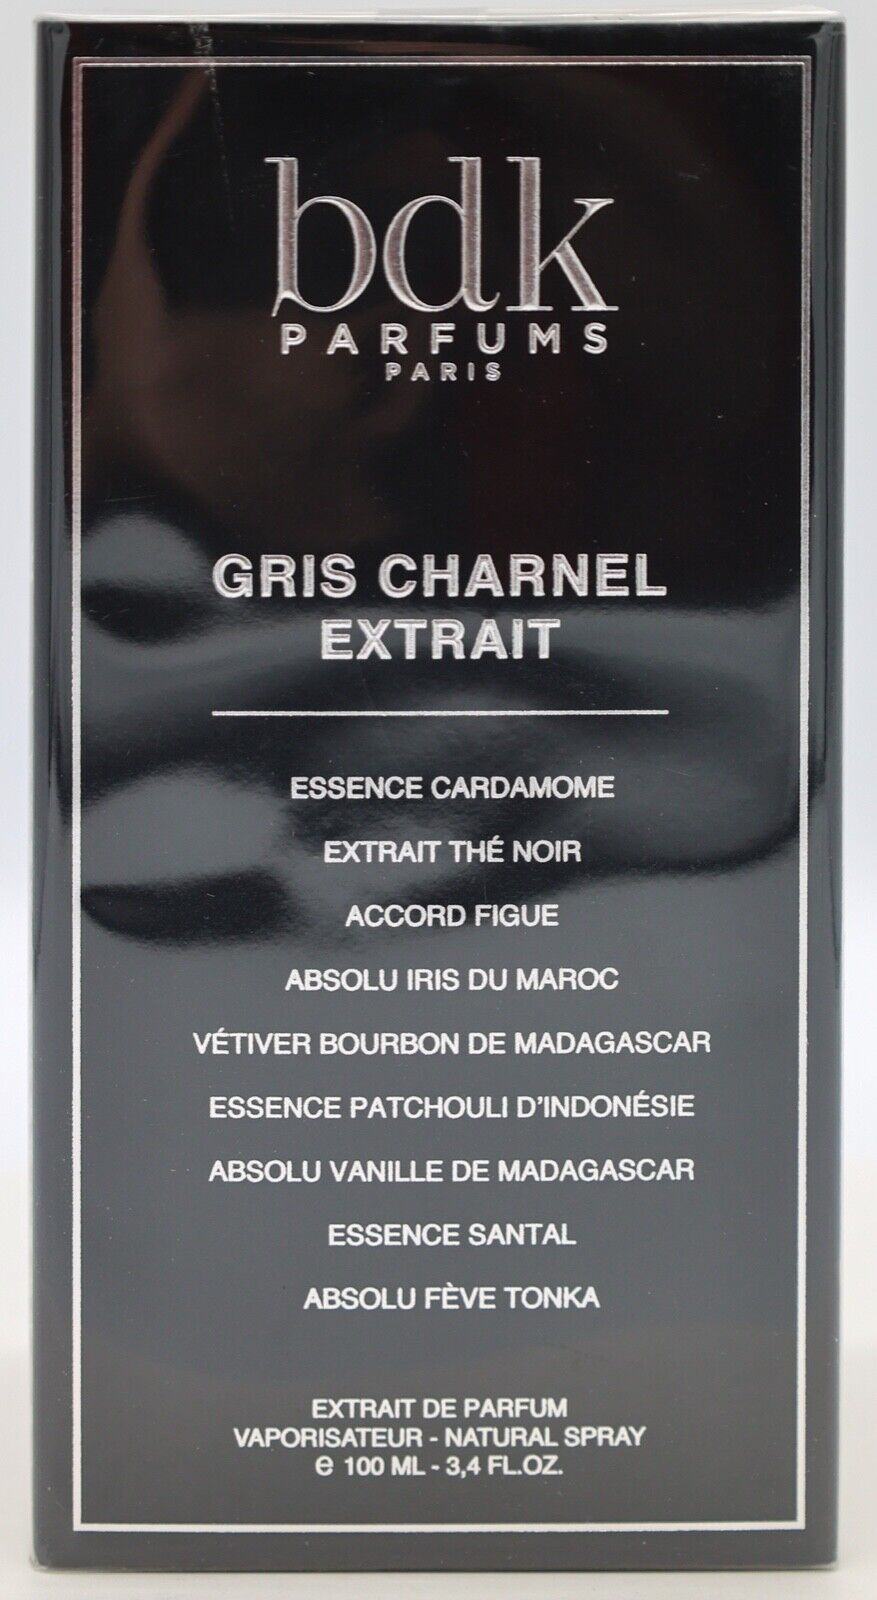 BDK Parfums Gris Charnel Extrait 100ml / 3.4oz Sealed Authentic